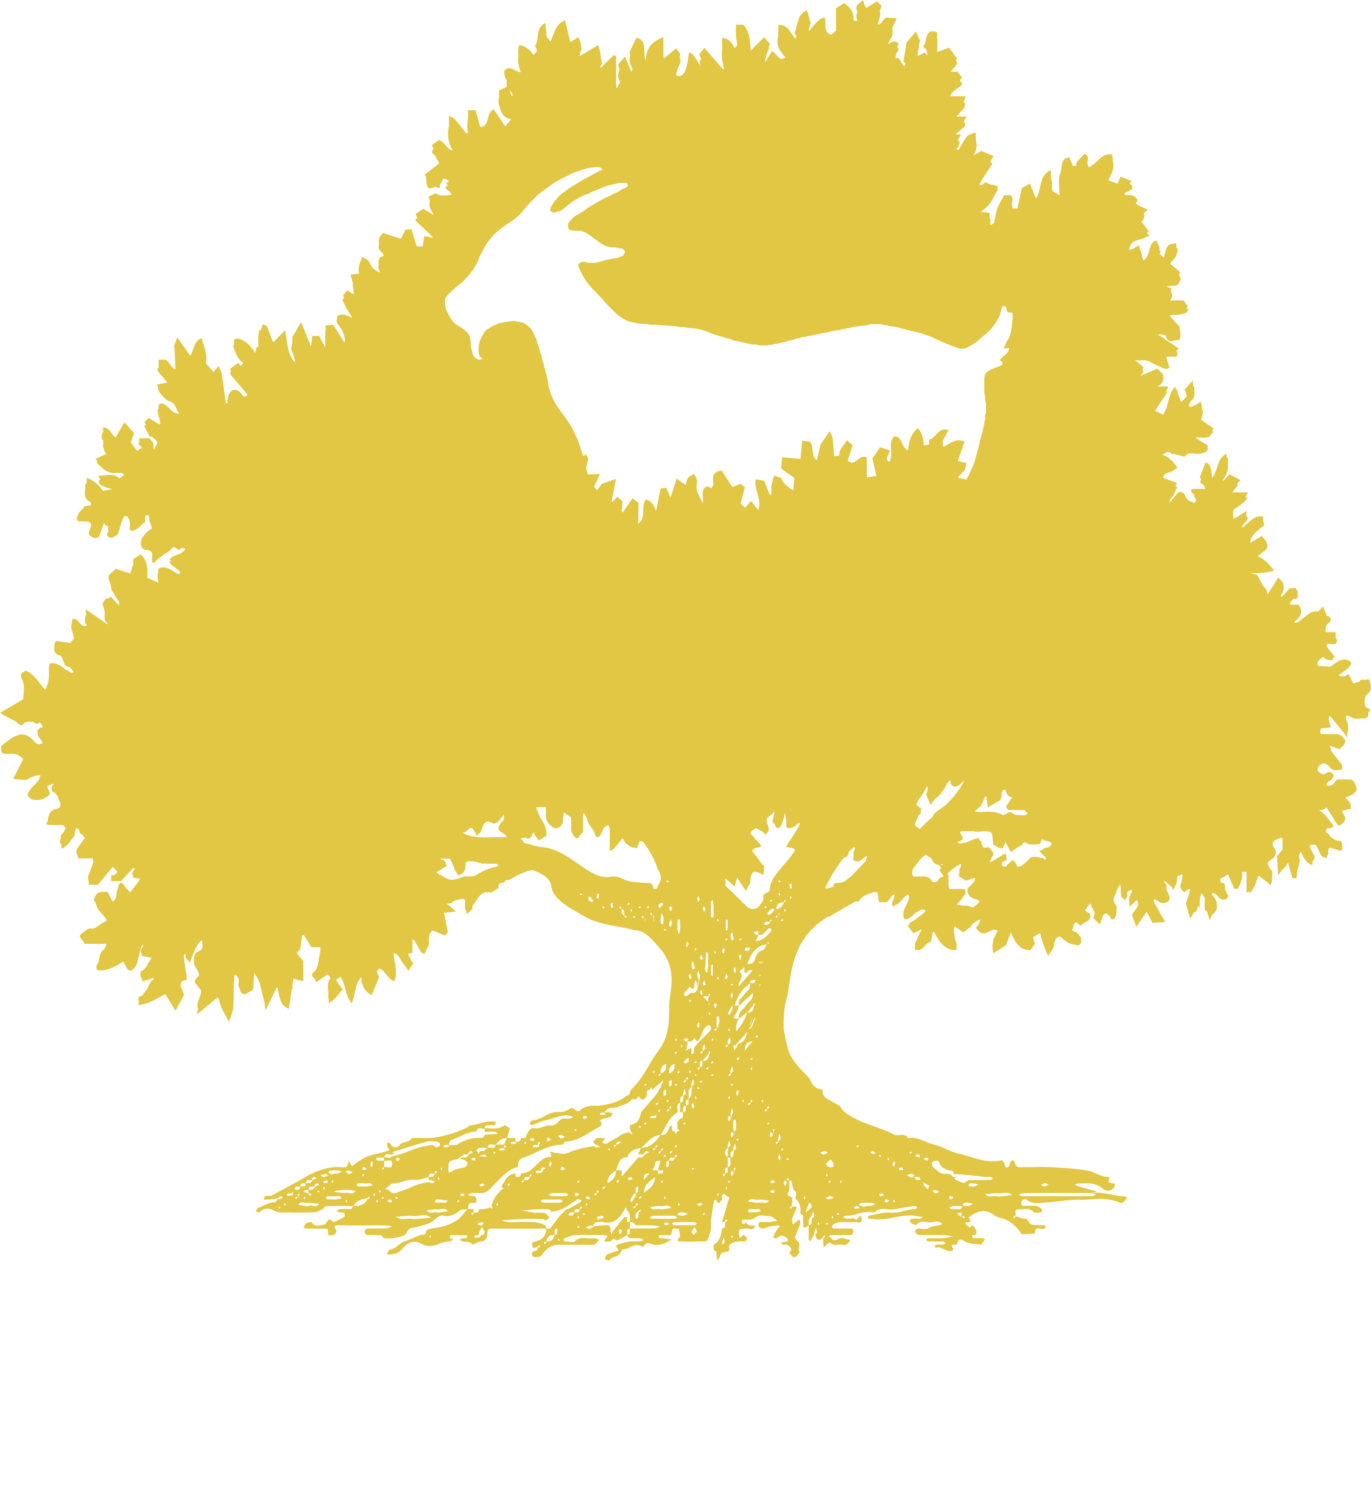 La Bandita